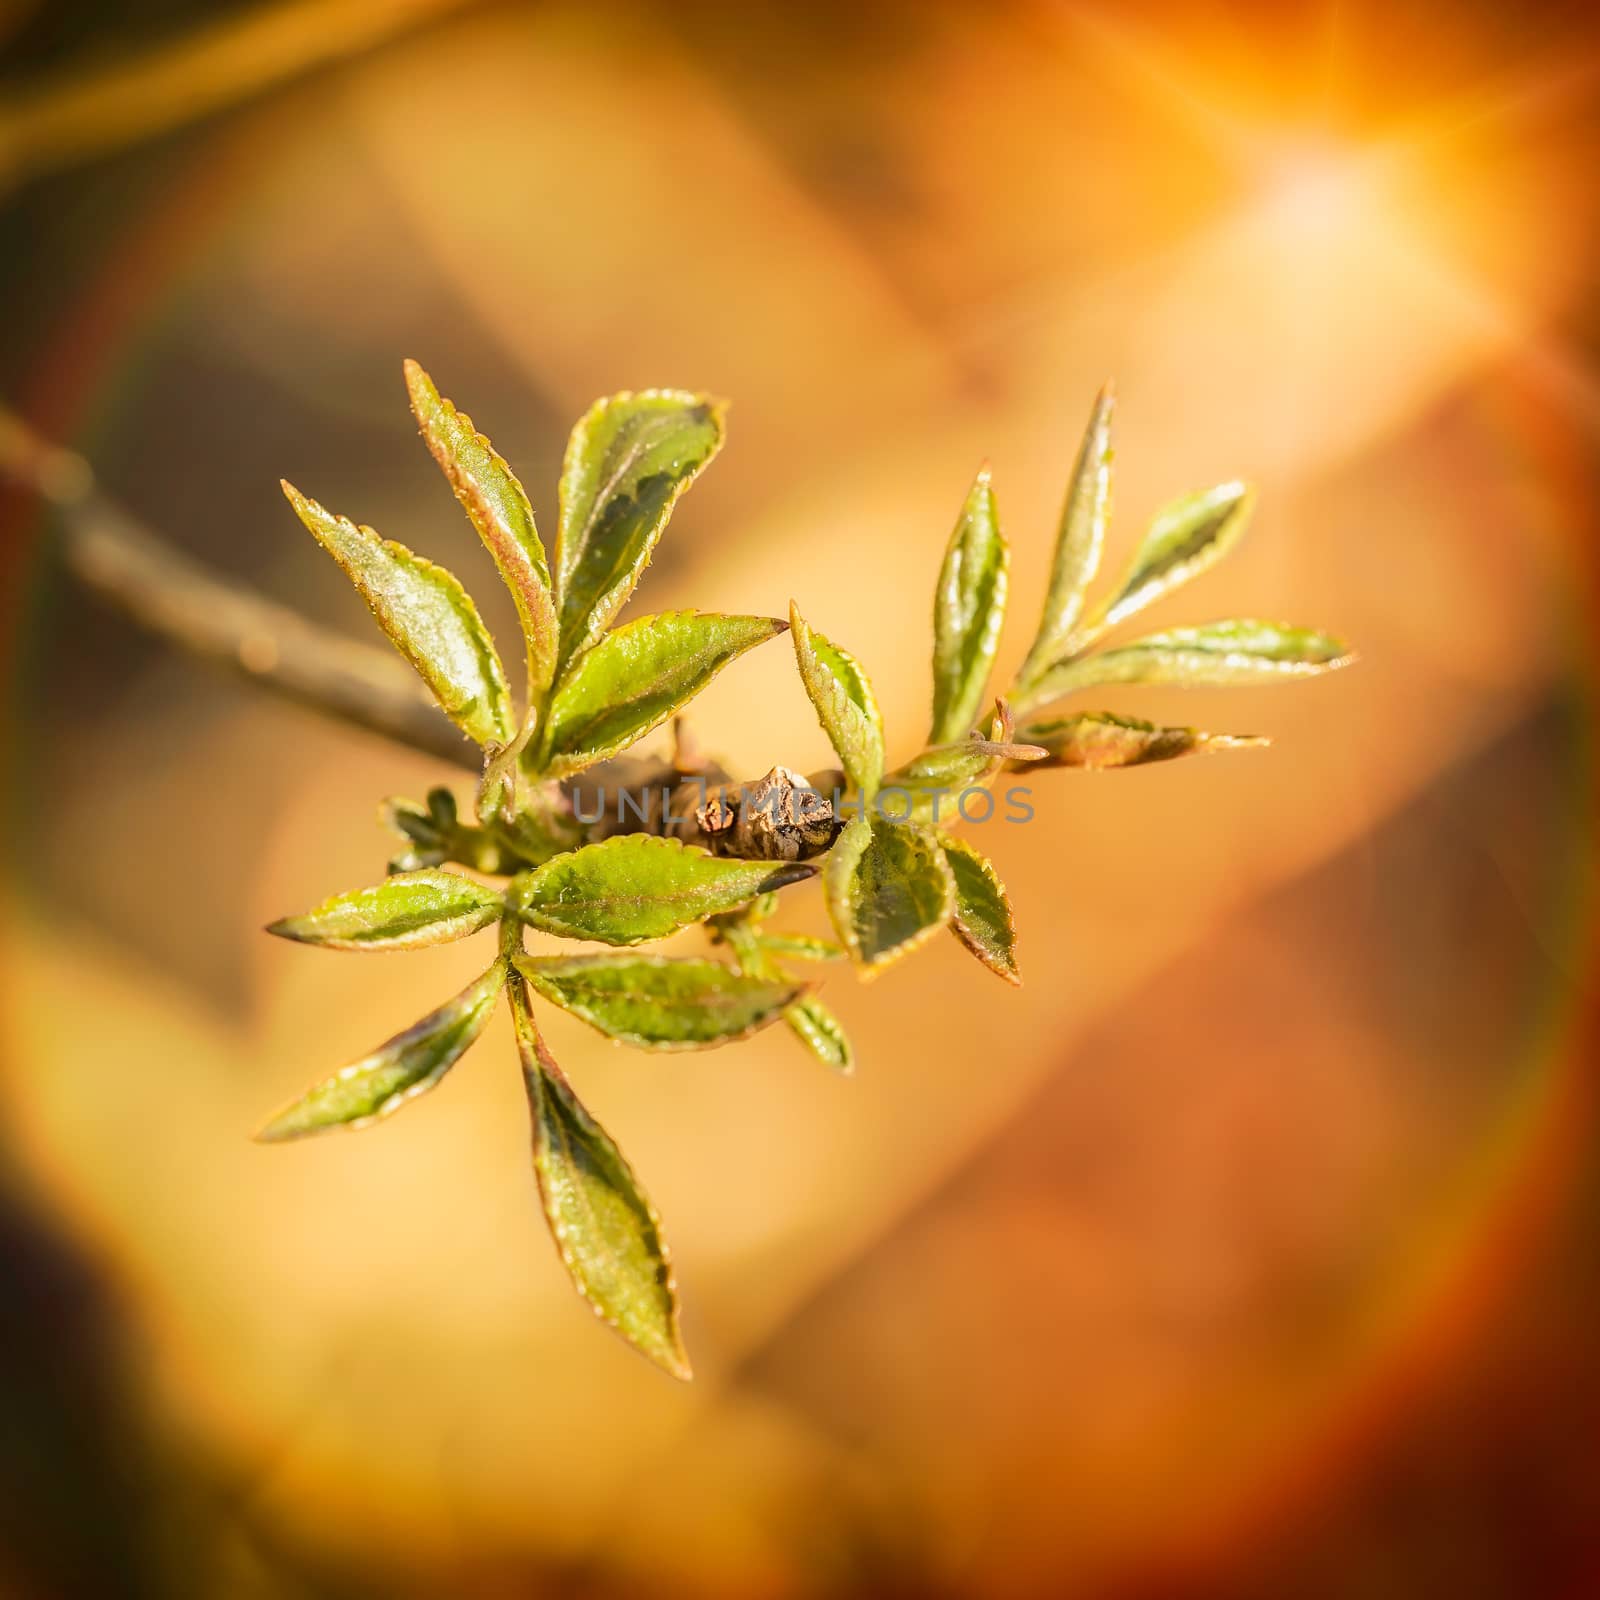 Little Tender Spring Leaves by MaxalTamor